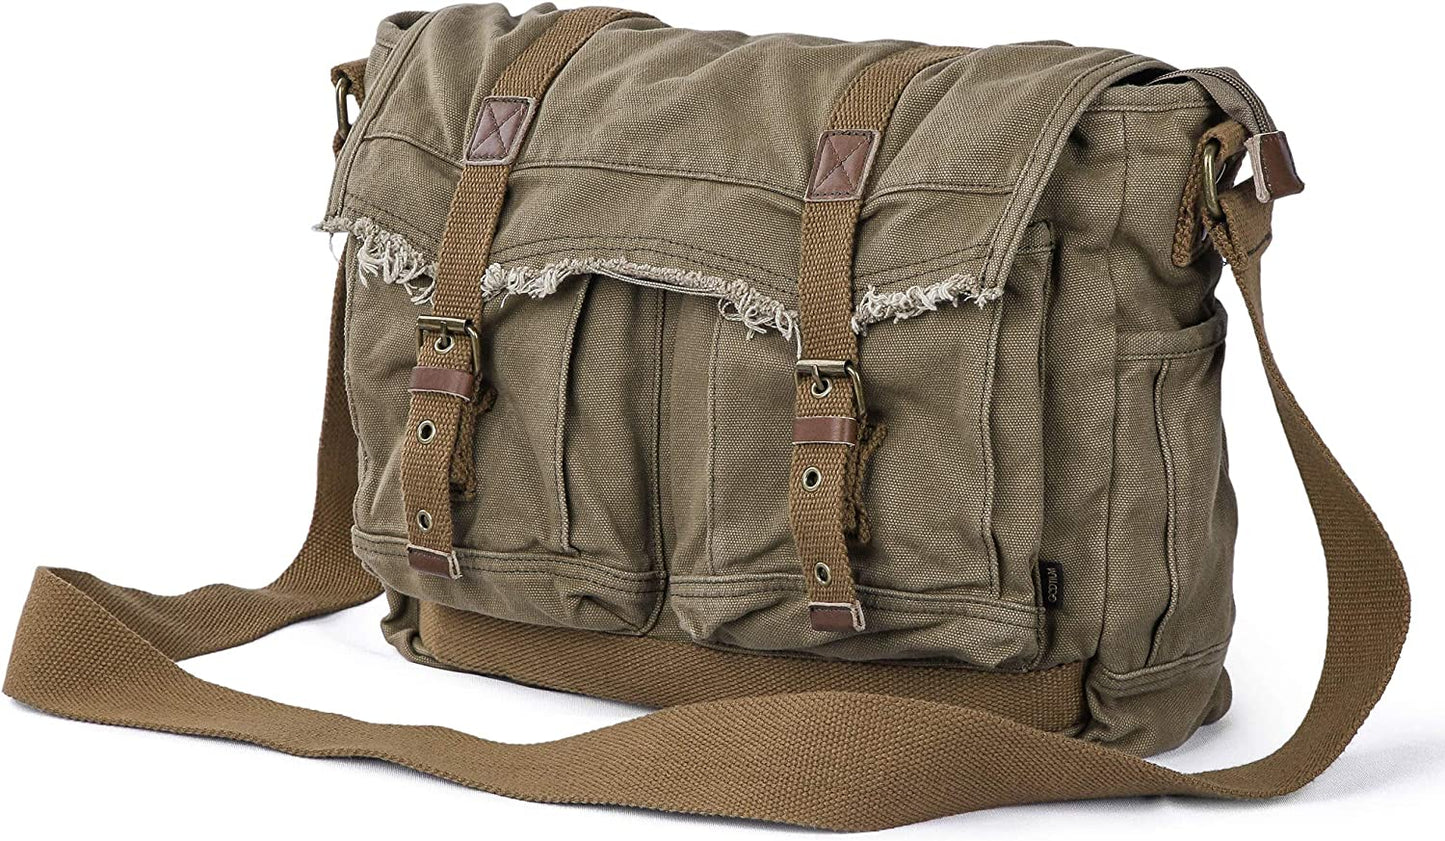 Gootium Canvas Messenger Bag - Vintage Shoulder Bag Frayed Style Boho Satchel